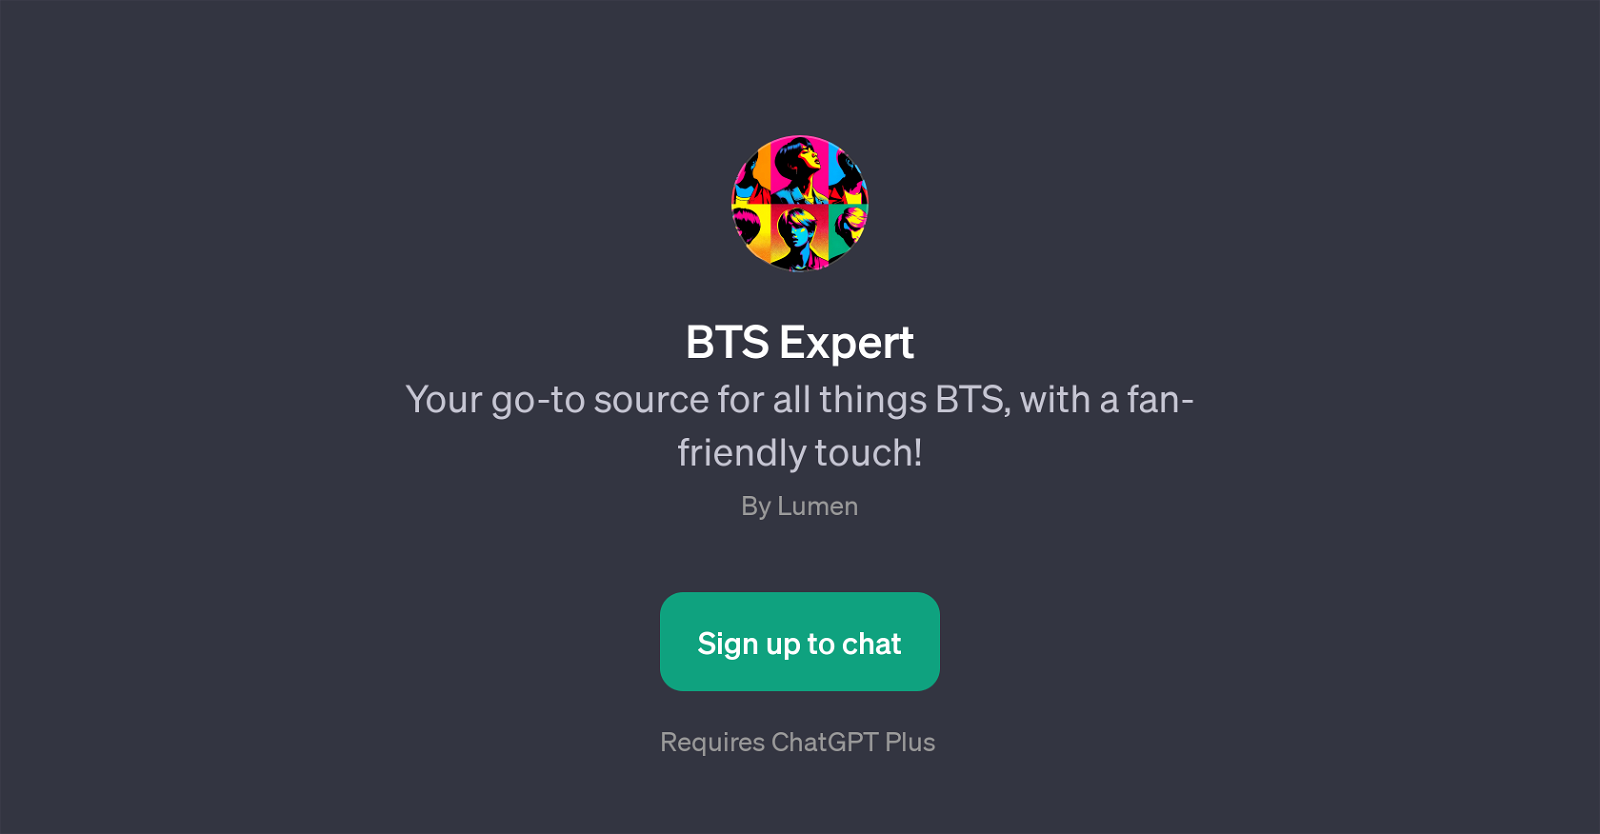 BTS Expert website